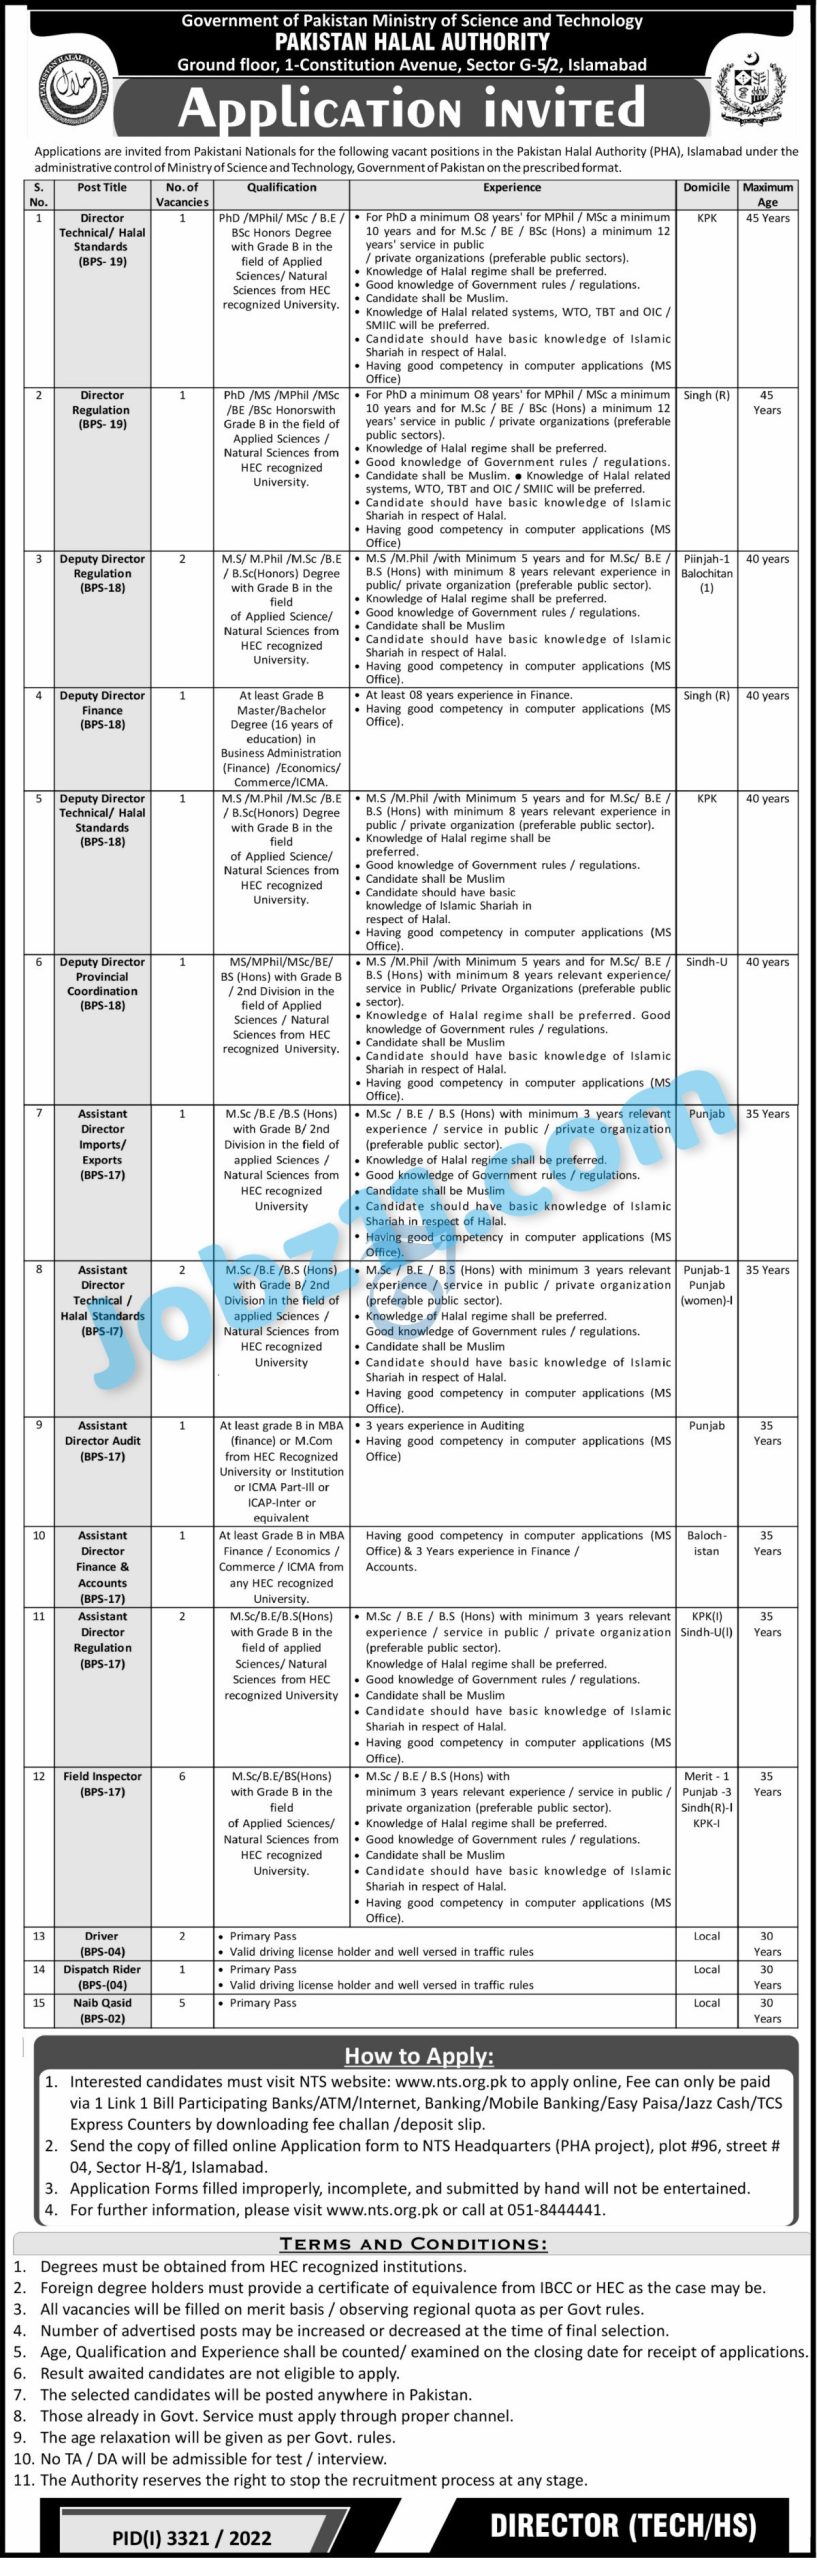 Pakistan Halal Authority Jobs 2022 Federal Govt Jobs Apply Online via NTS